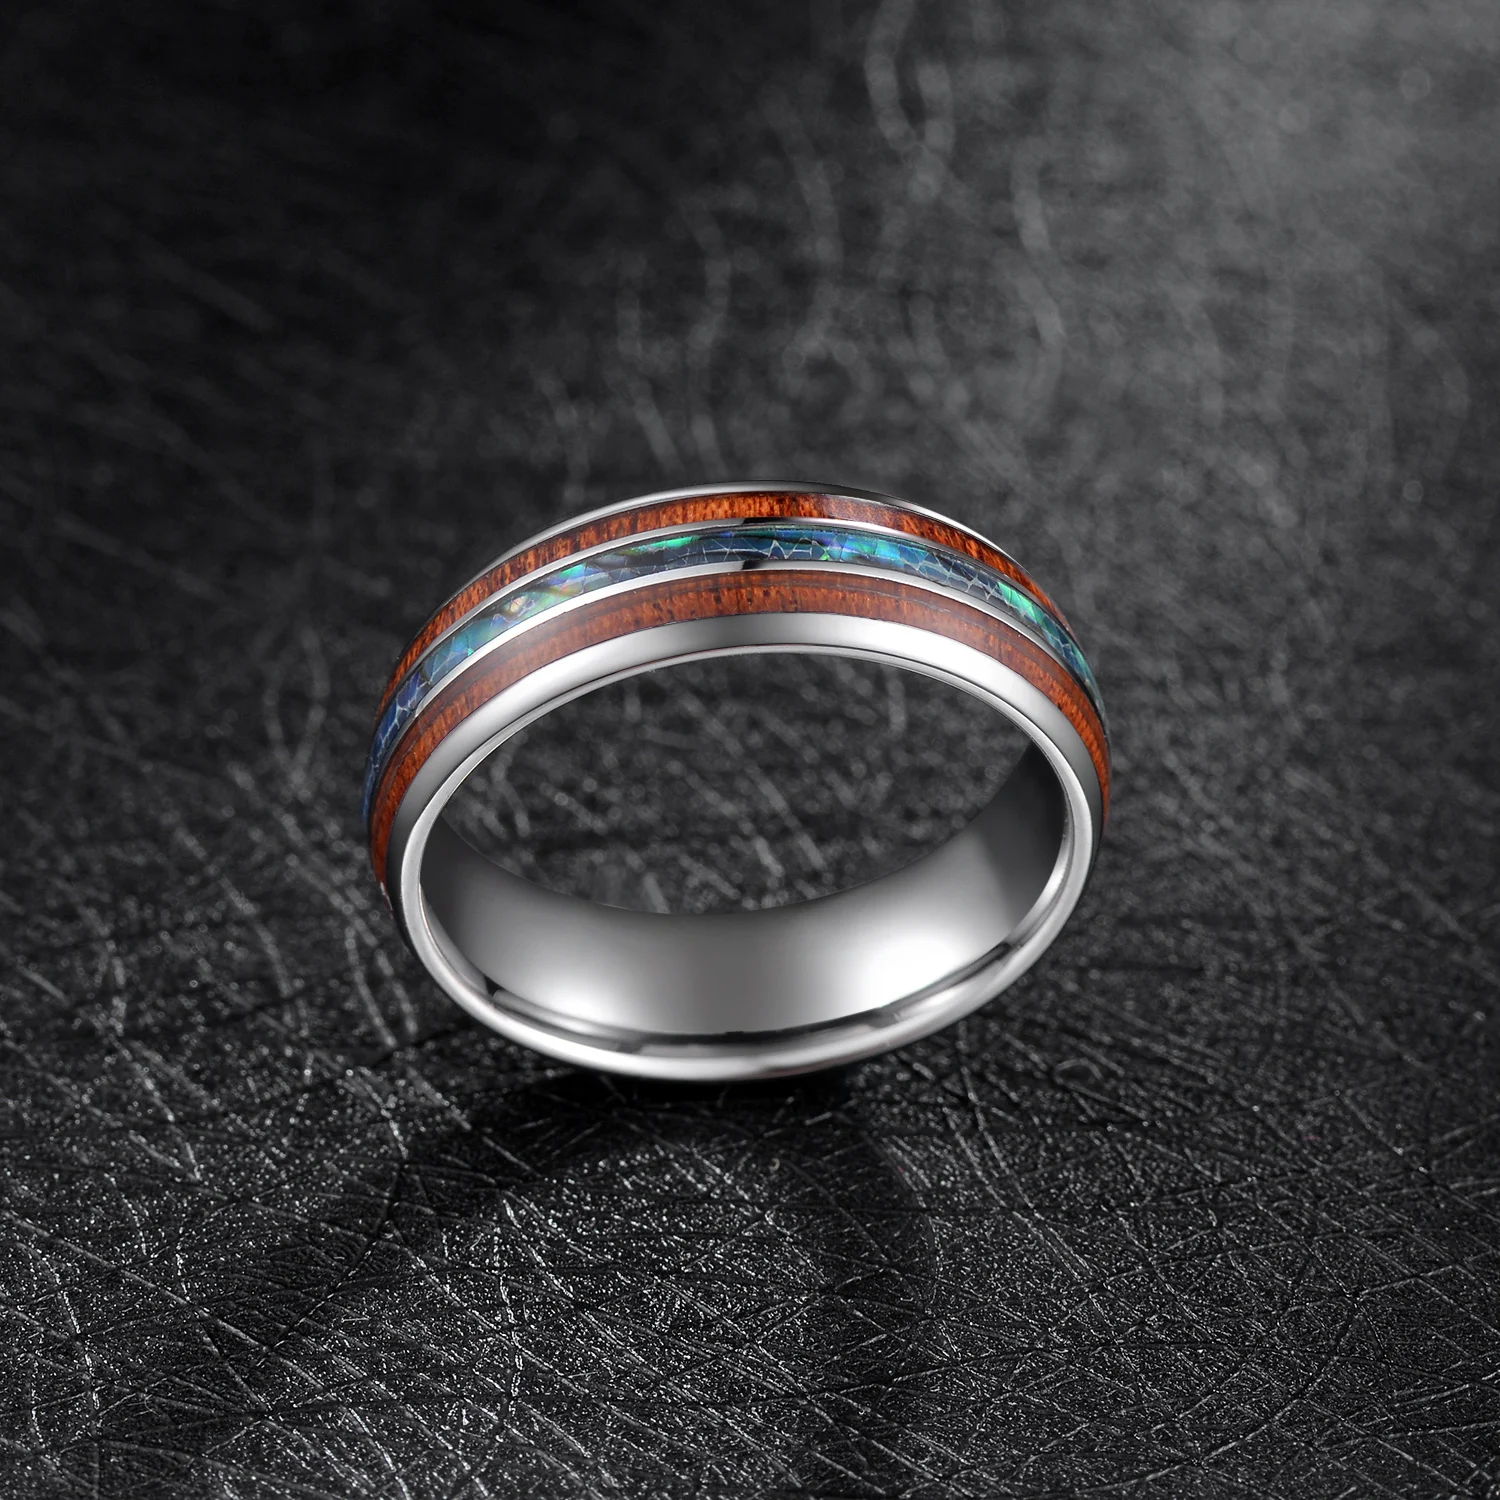 TIGRADE 8 мм кольца из карбида вольфрама Abalone Shell обручальные кольца купол тройной рифленый опал для мужчин удобная посадка размер от 5 до 15